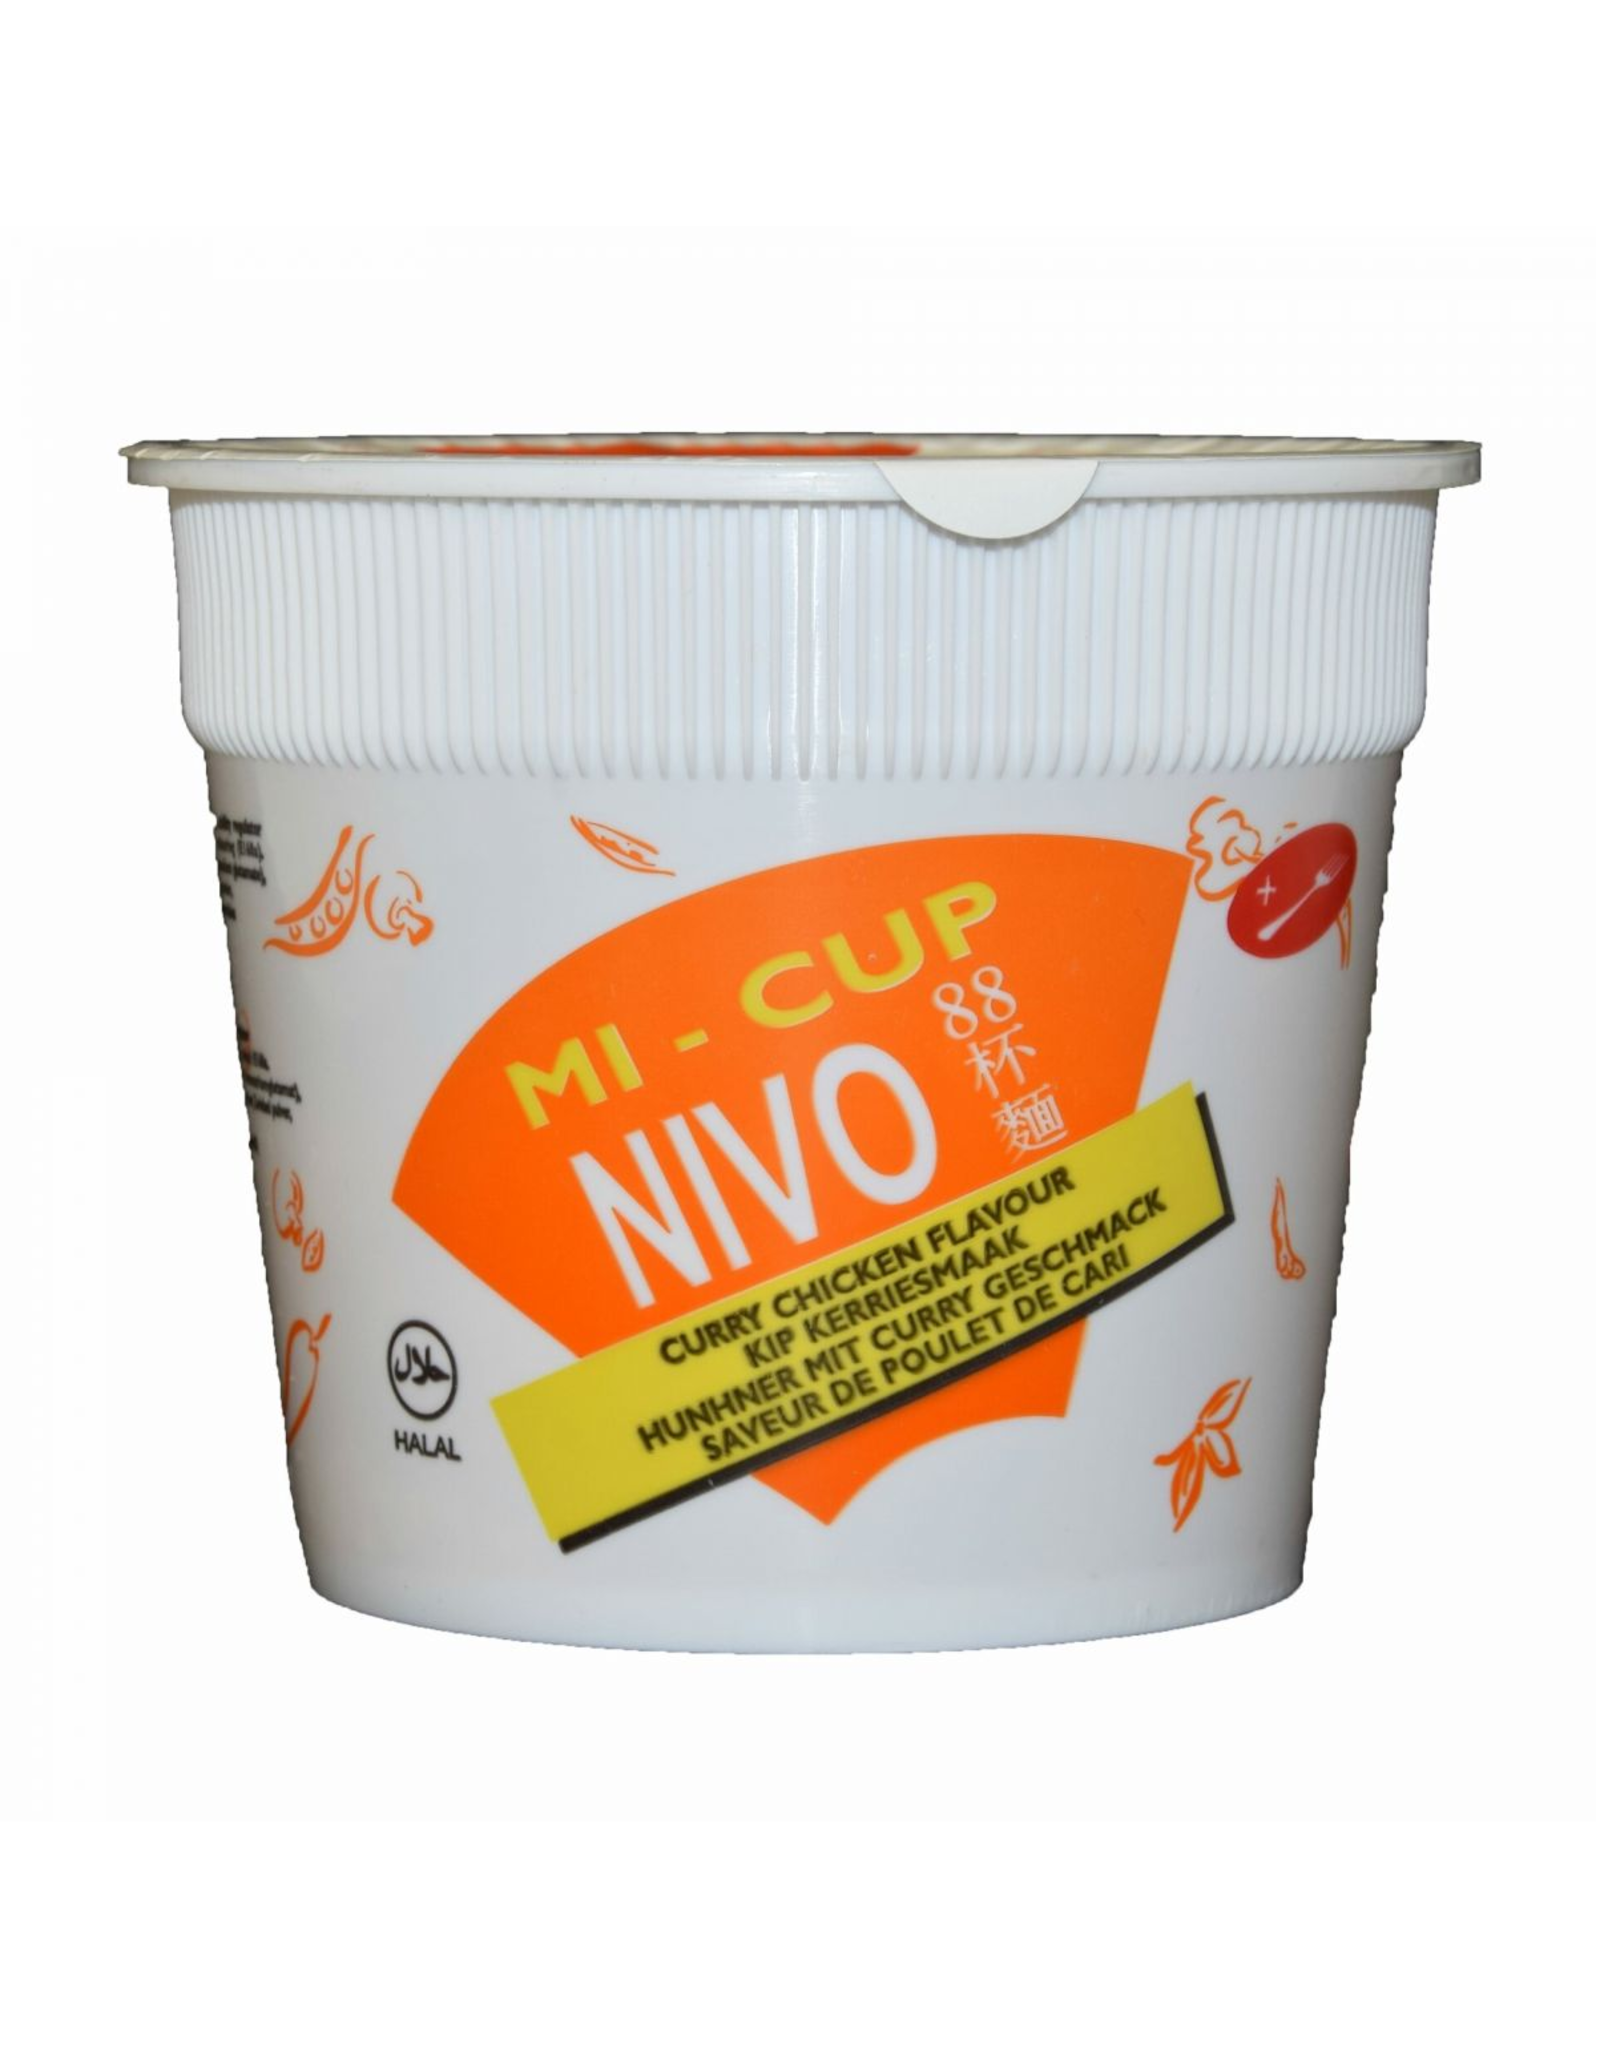 Nivo Mi-Cup Kari Ayam - Chicken curry 24 stuks